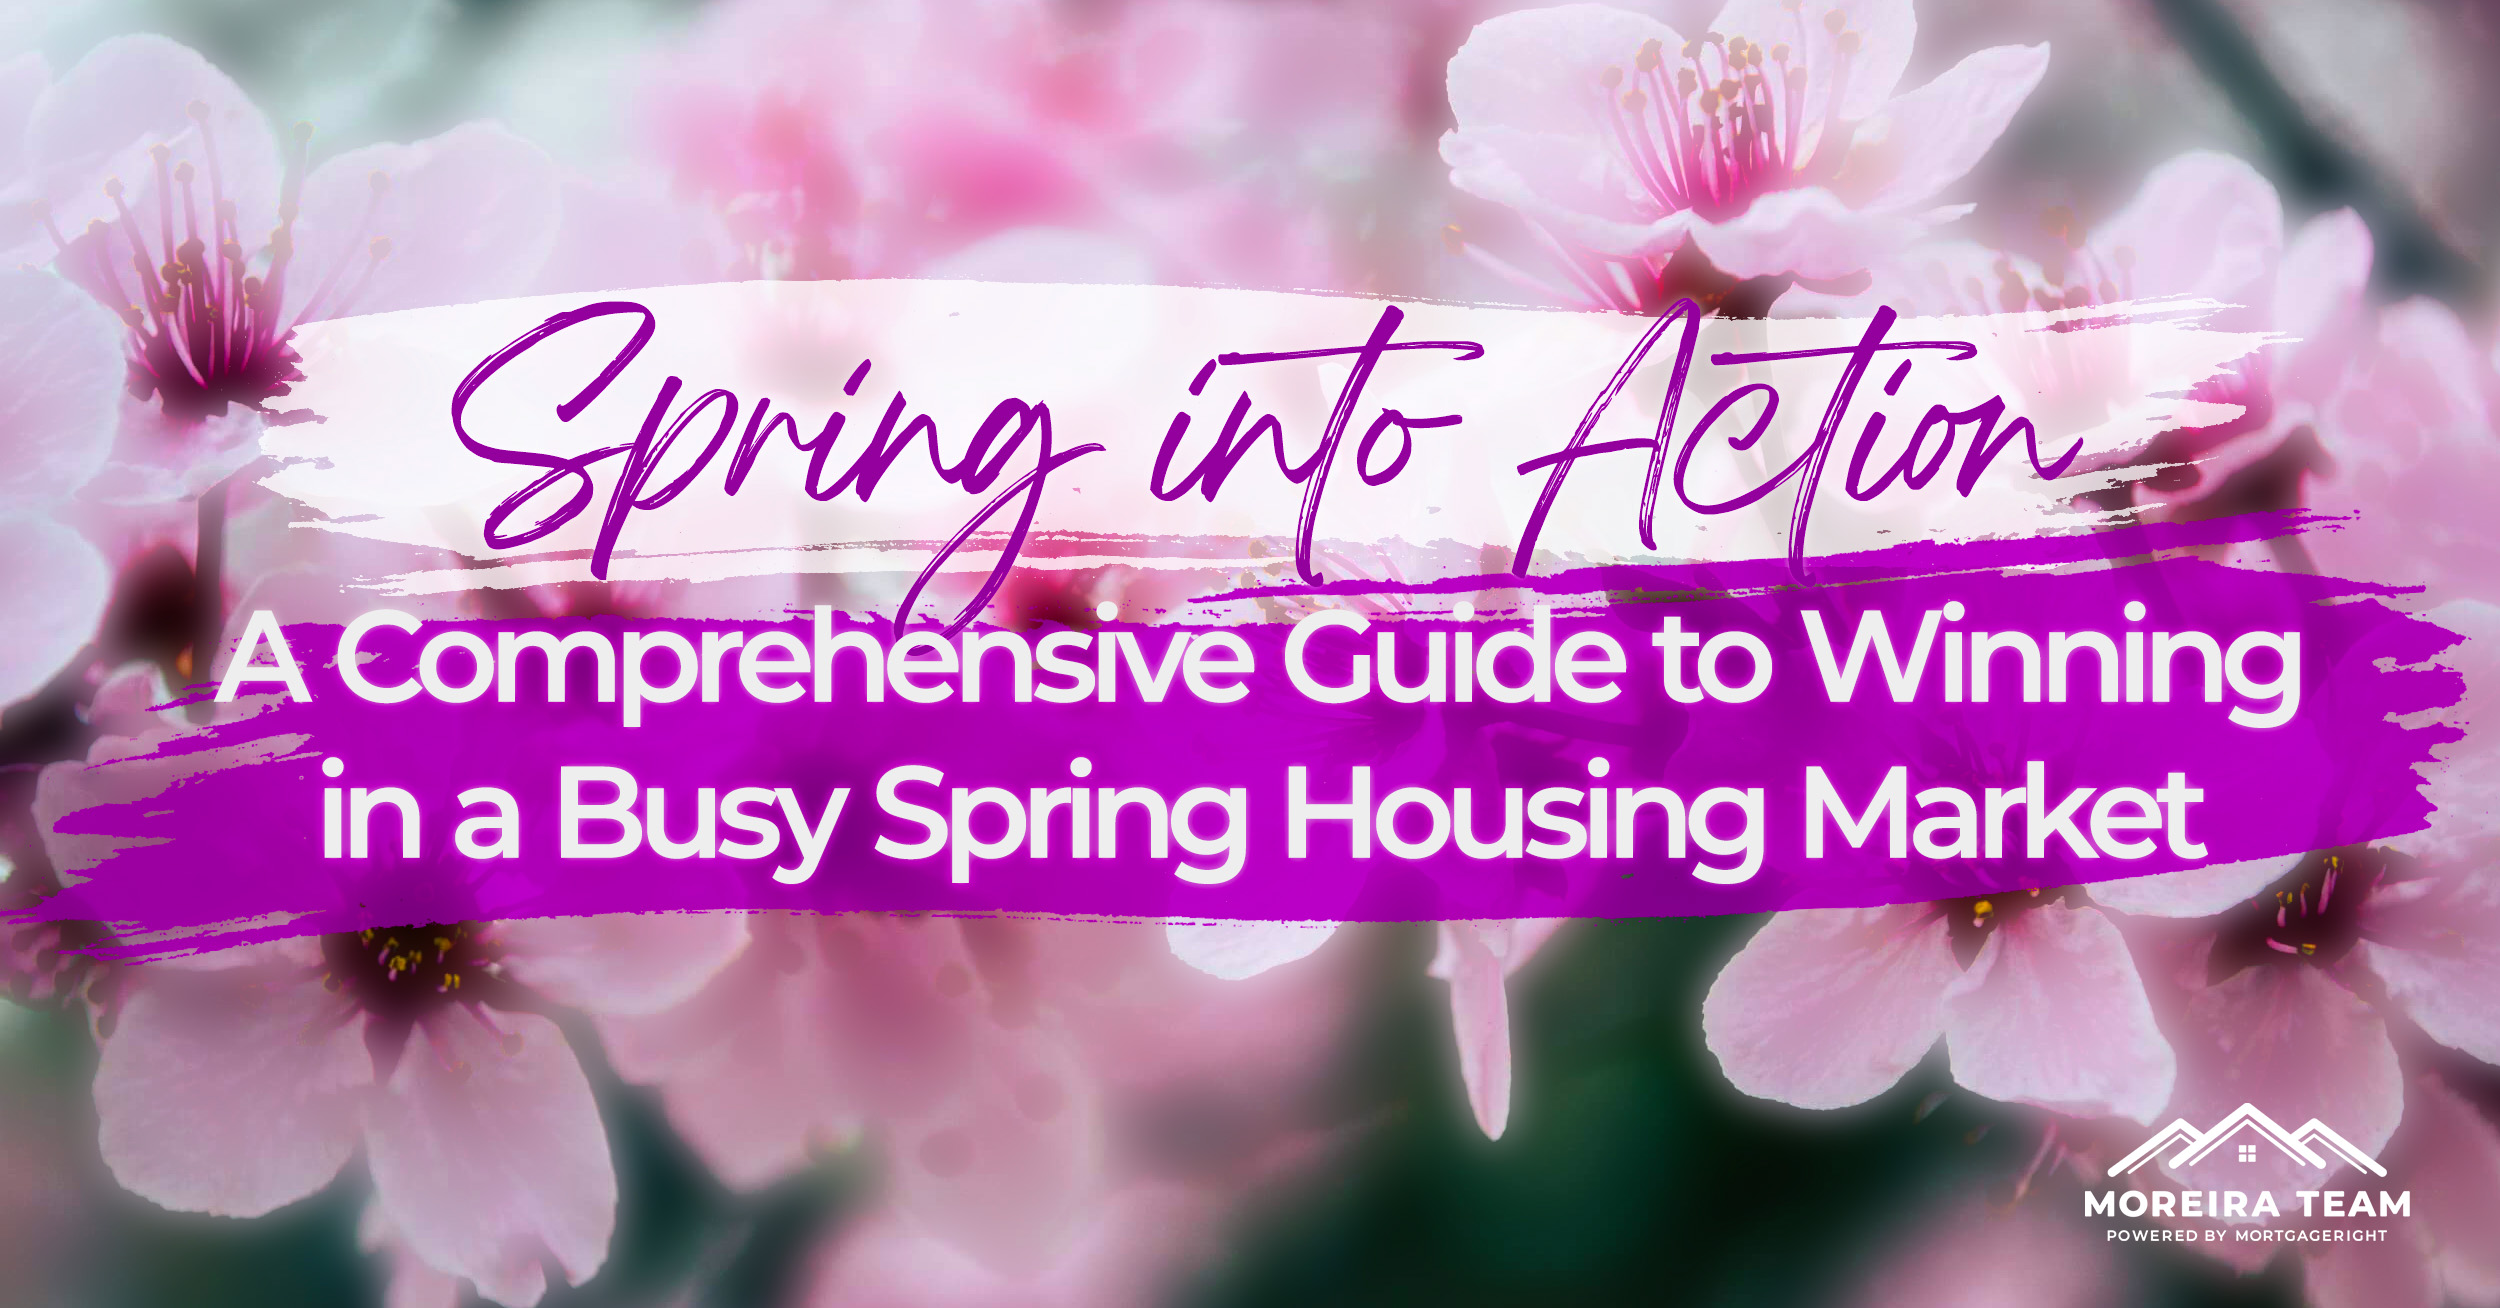 Spring homebuying season